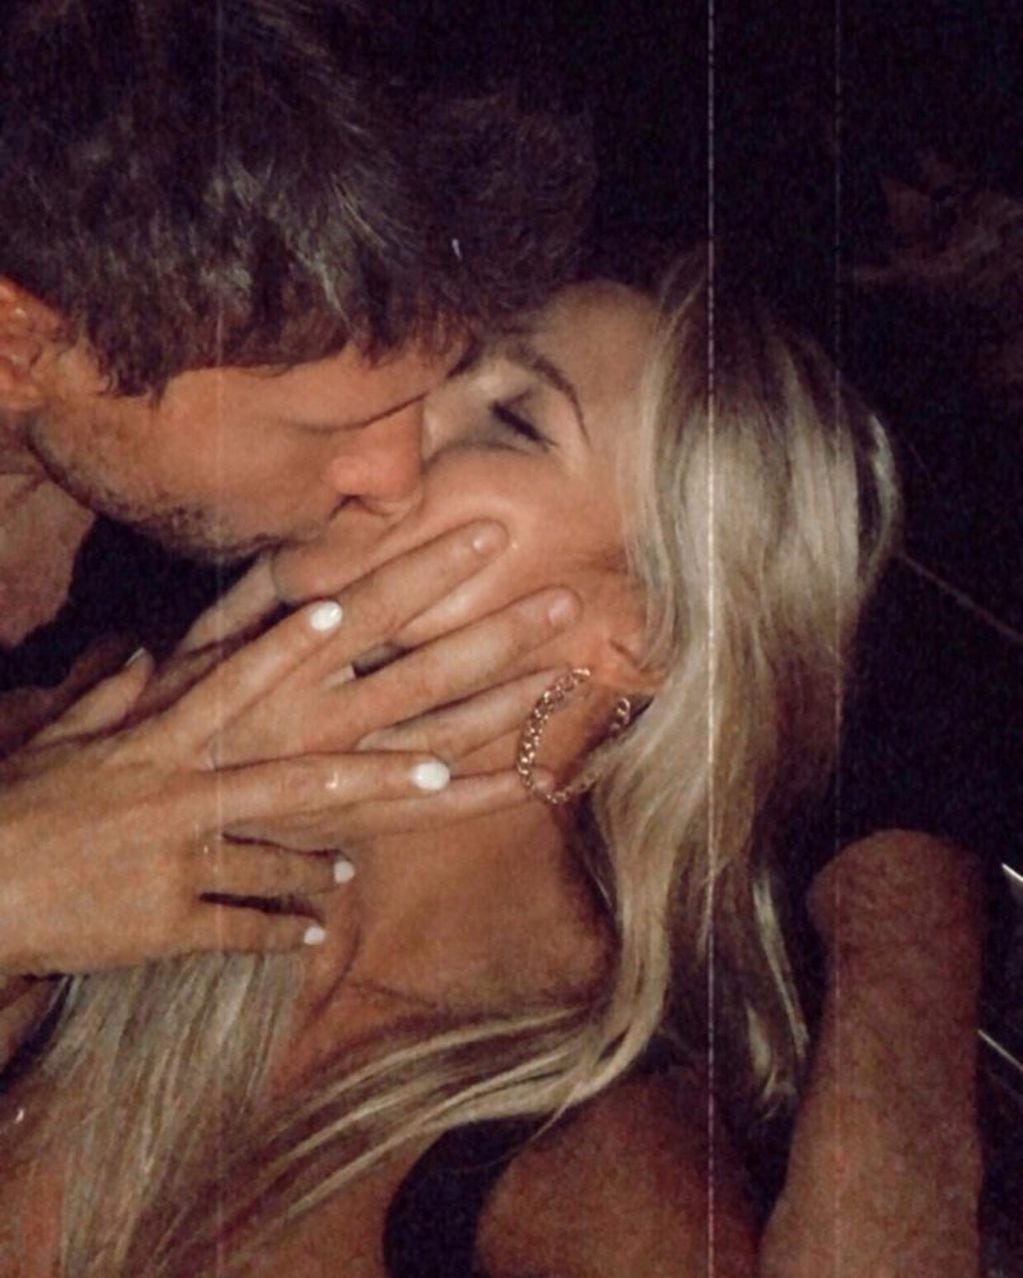 En la segunda foto se puede ver a la nueva pareja darse un beso frente a la cámara (Instagram/@martinbrenna_)